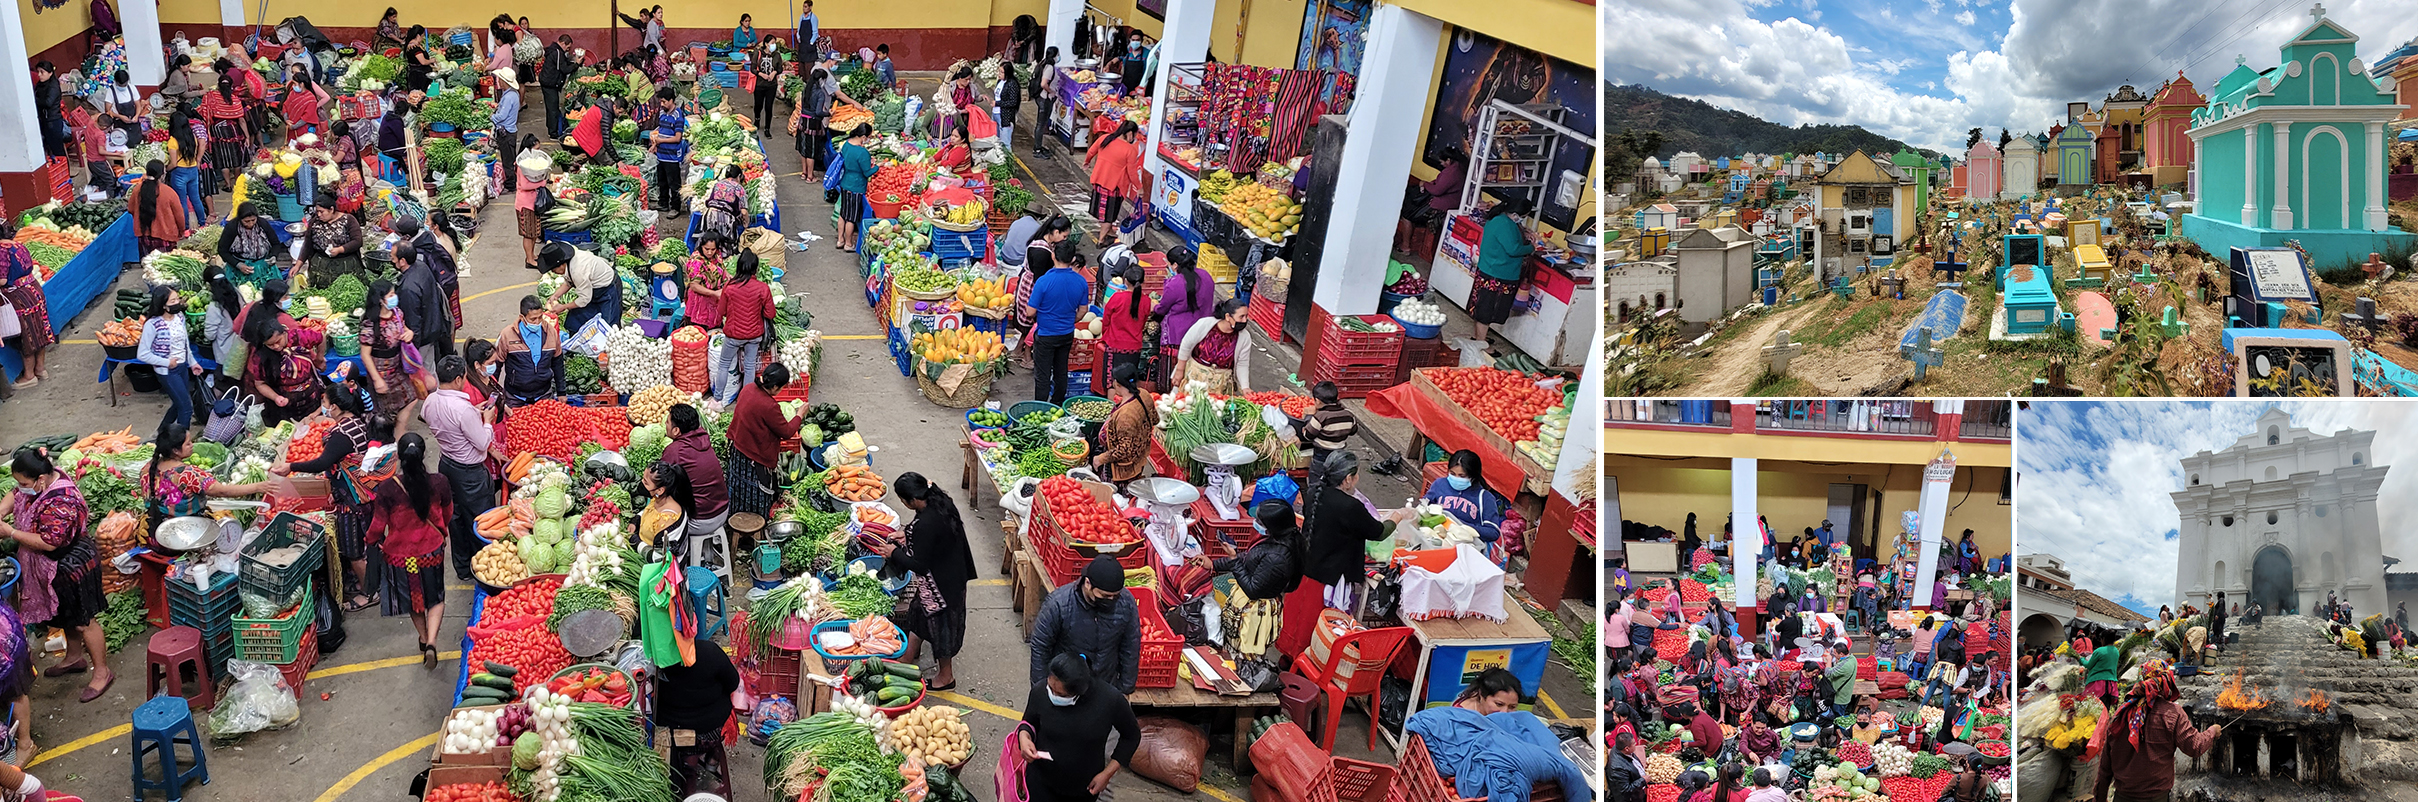 Day trip Chichicastenango, market tour